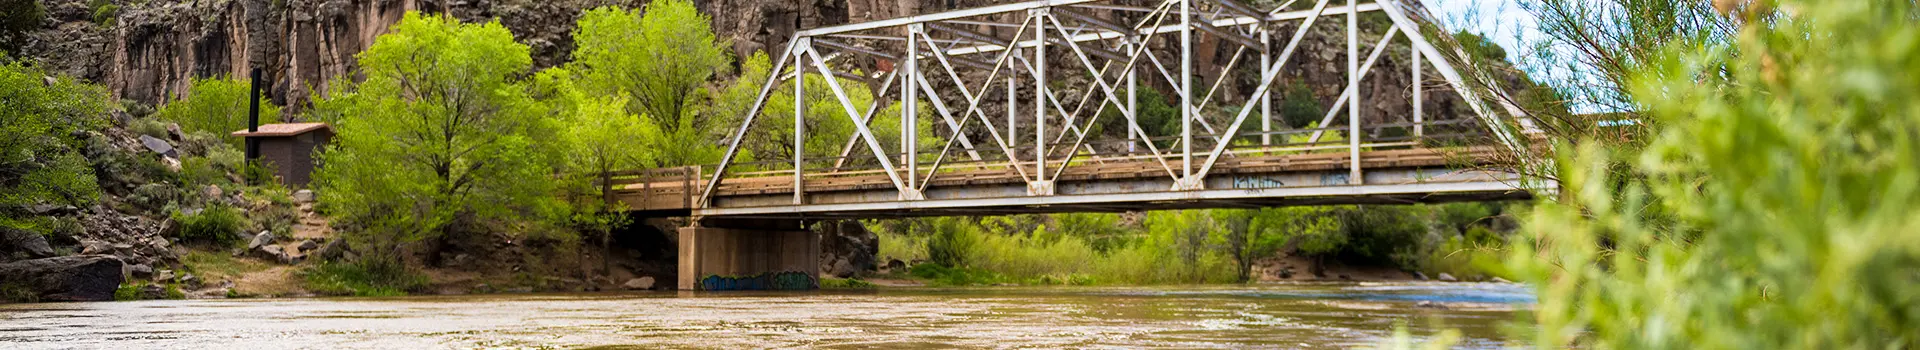 John Dunn Bridge and the Rio Grande